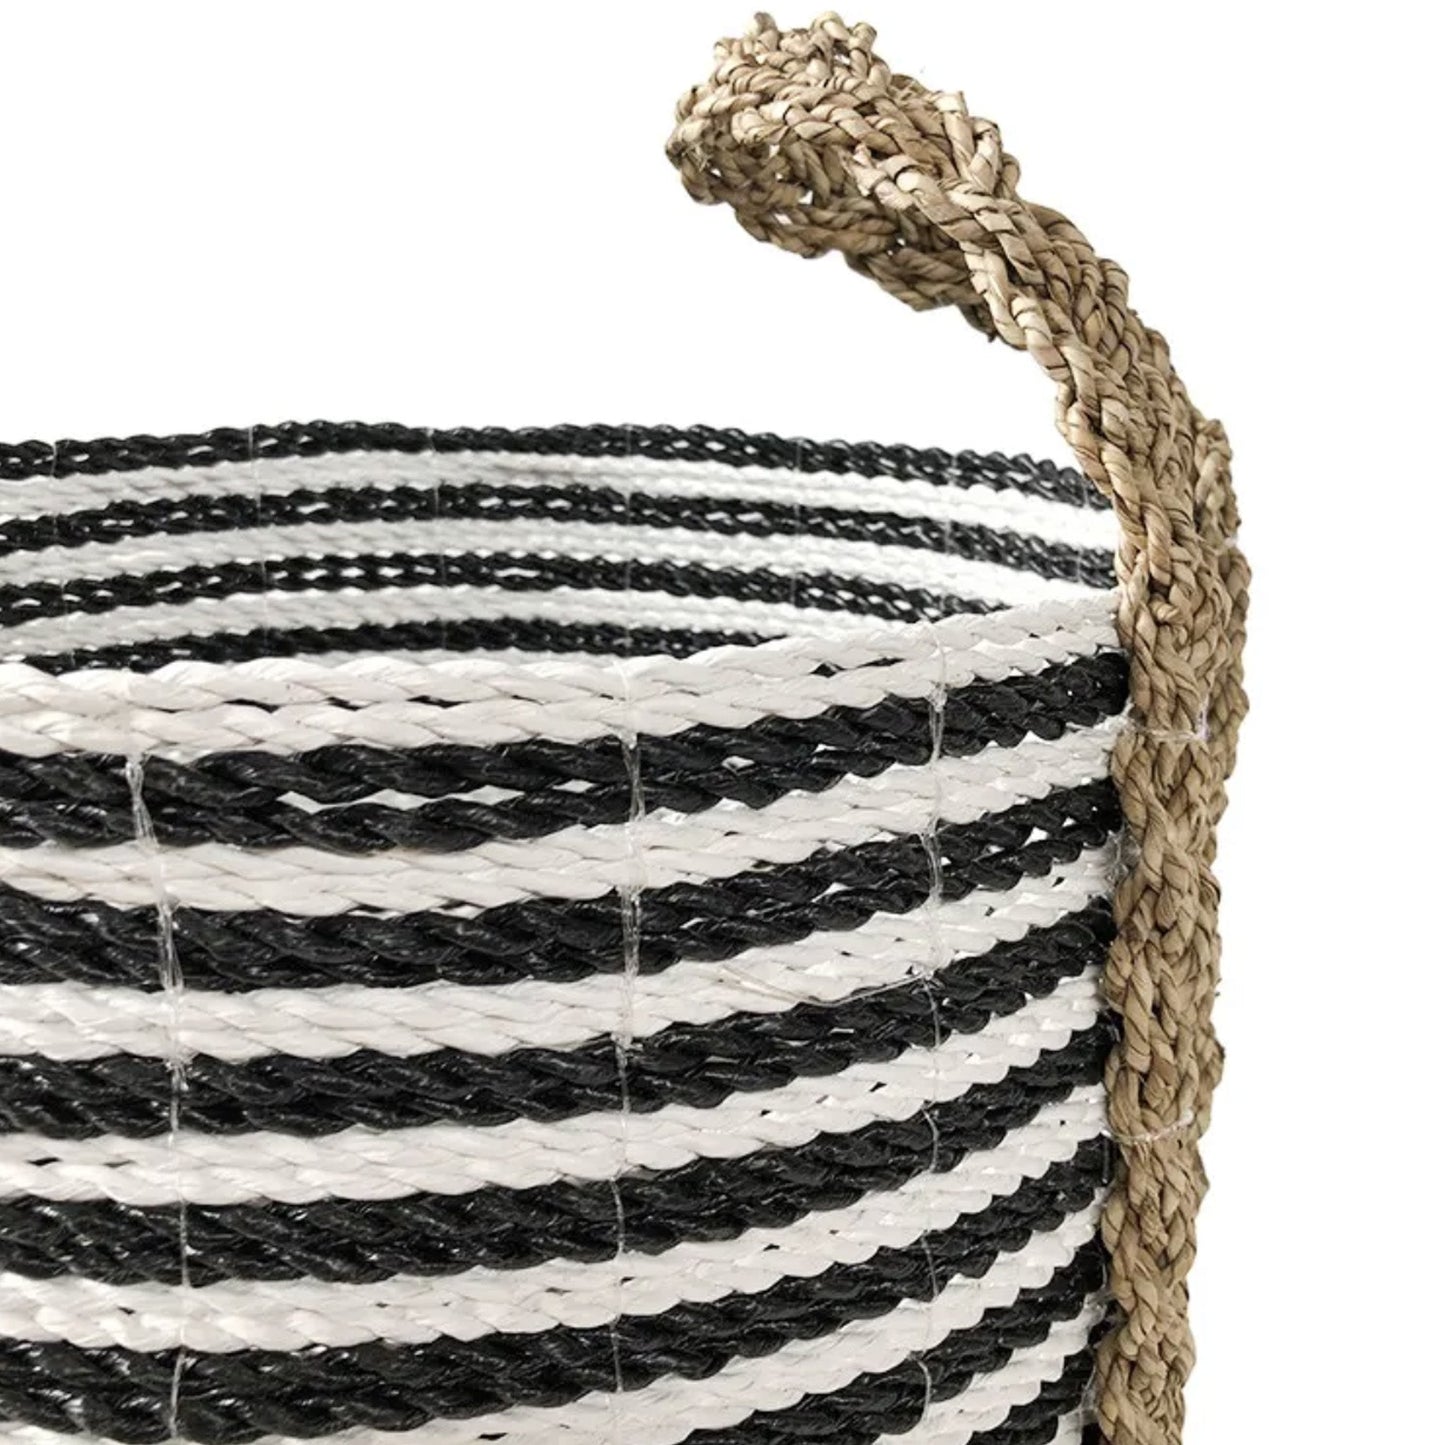 Handgefertigter Korb mit schwarz-weißen Streifen - Vandeley